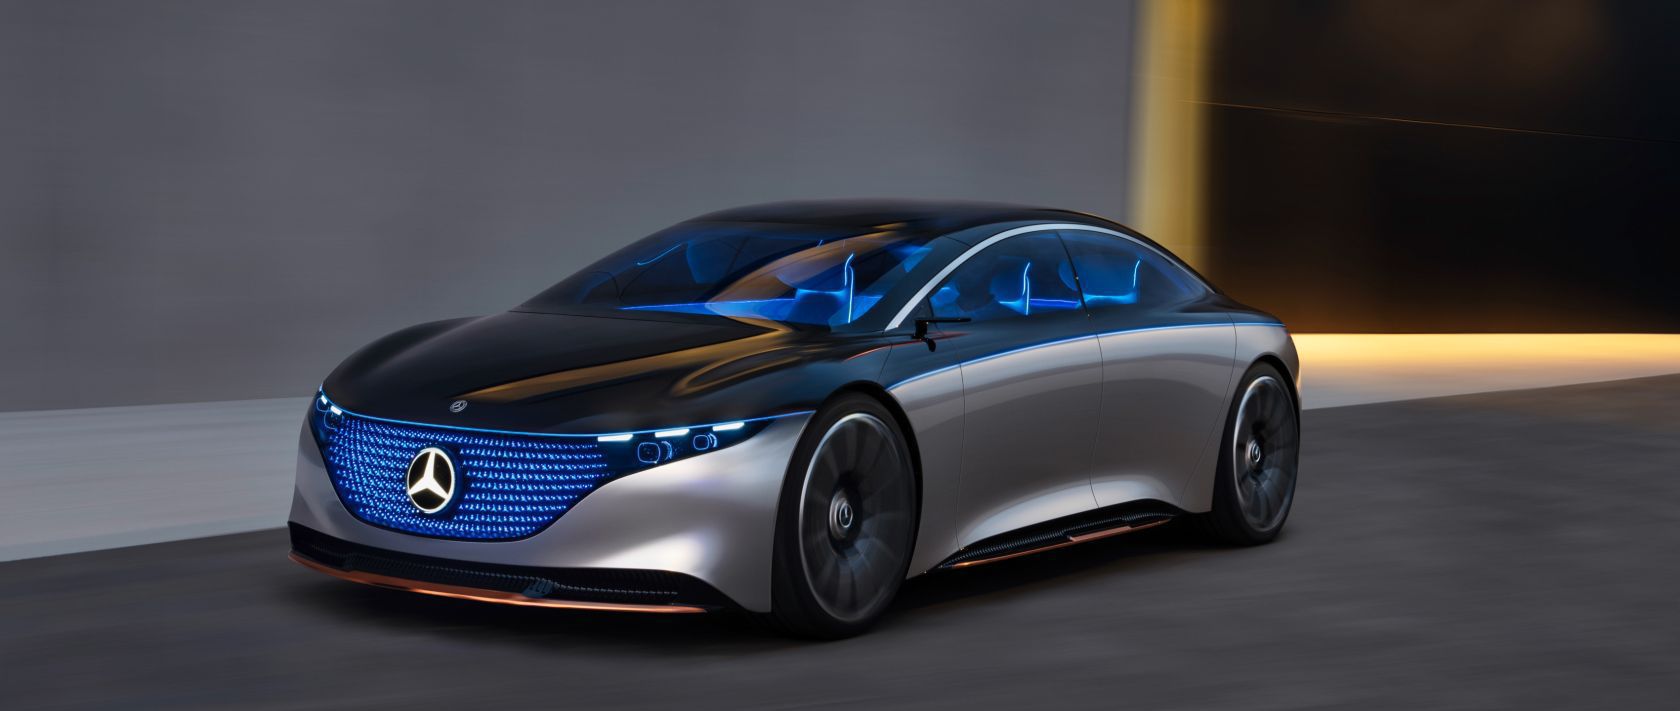 Ô tô điện sẽ phát triển mạnh trên thị trường xe năm 2020 4, OFFB